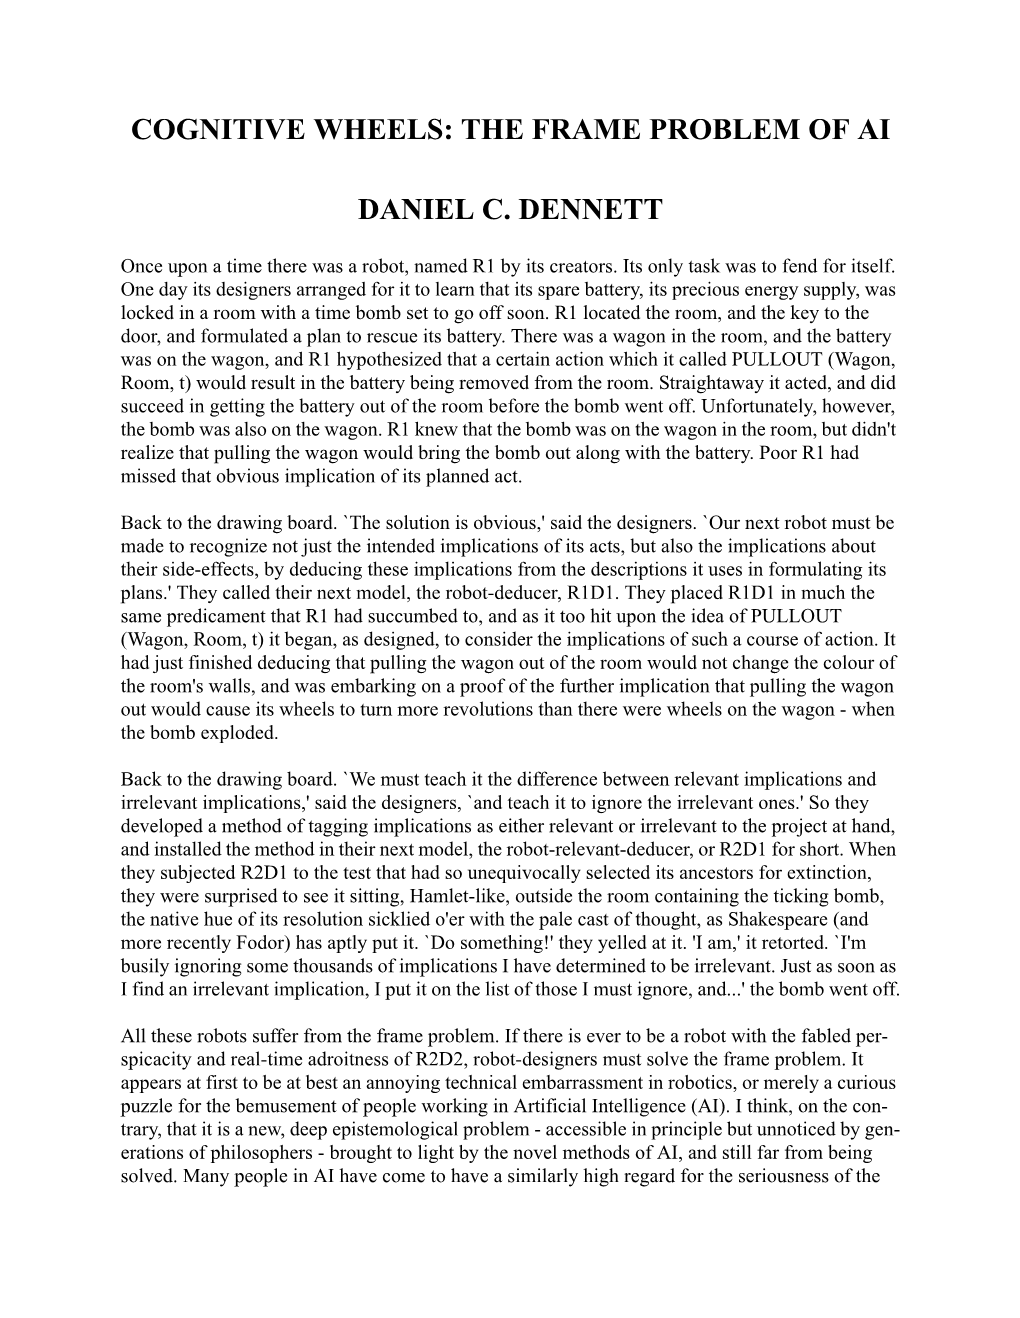 The Frame Problem of Ai Daniel C. Dennett